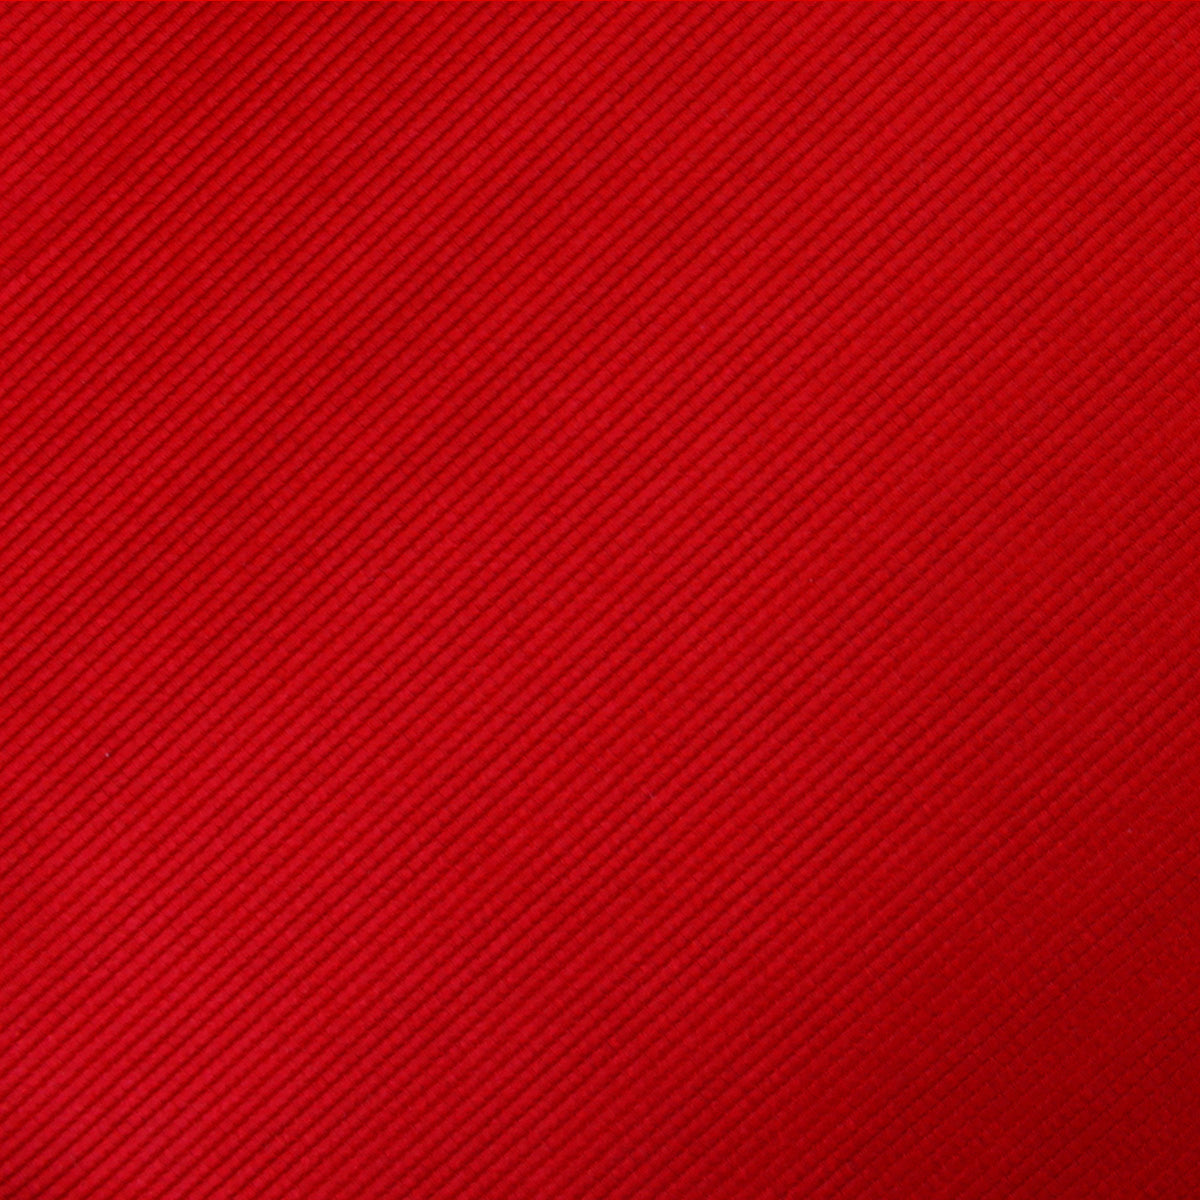 Red Cherry Twill Necktie Fabric